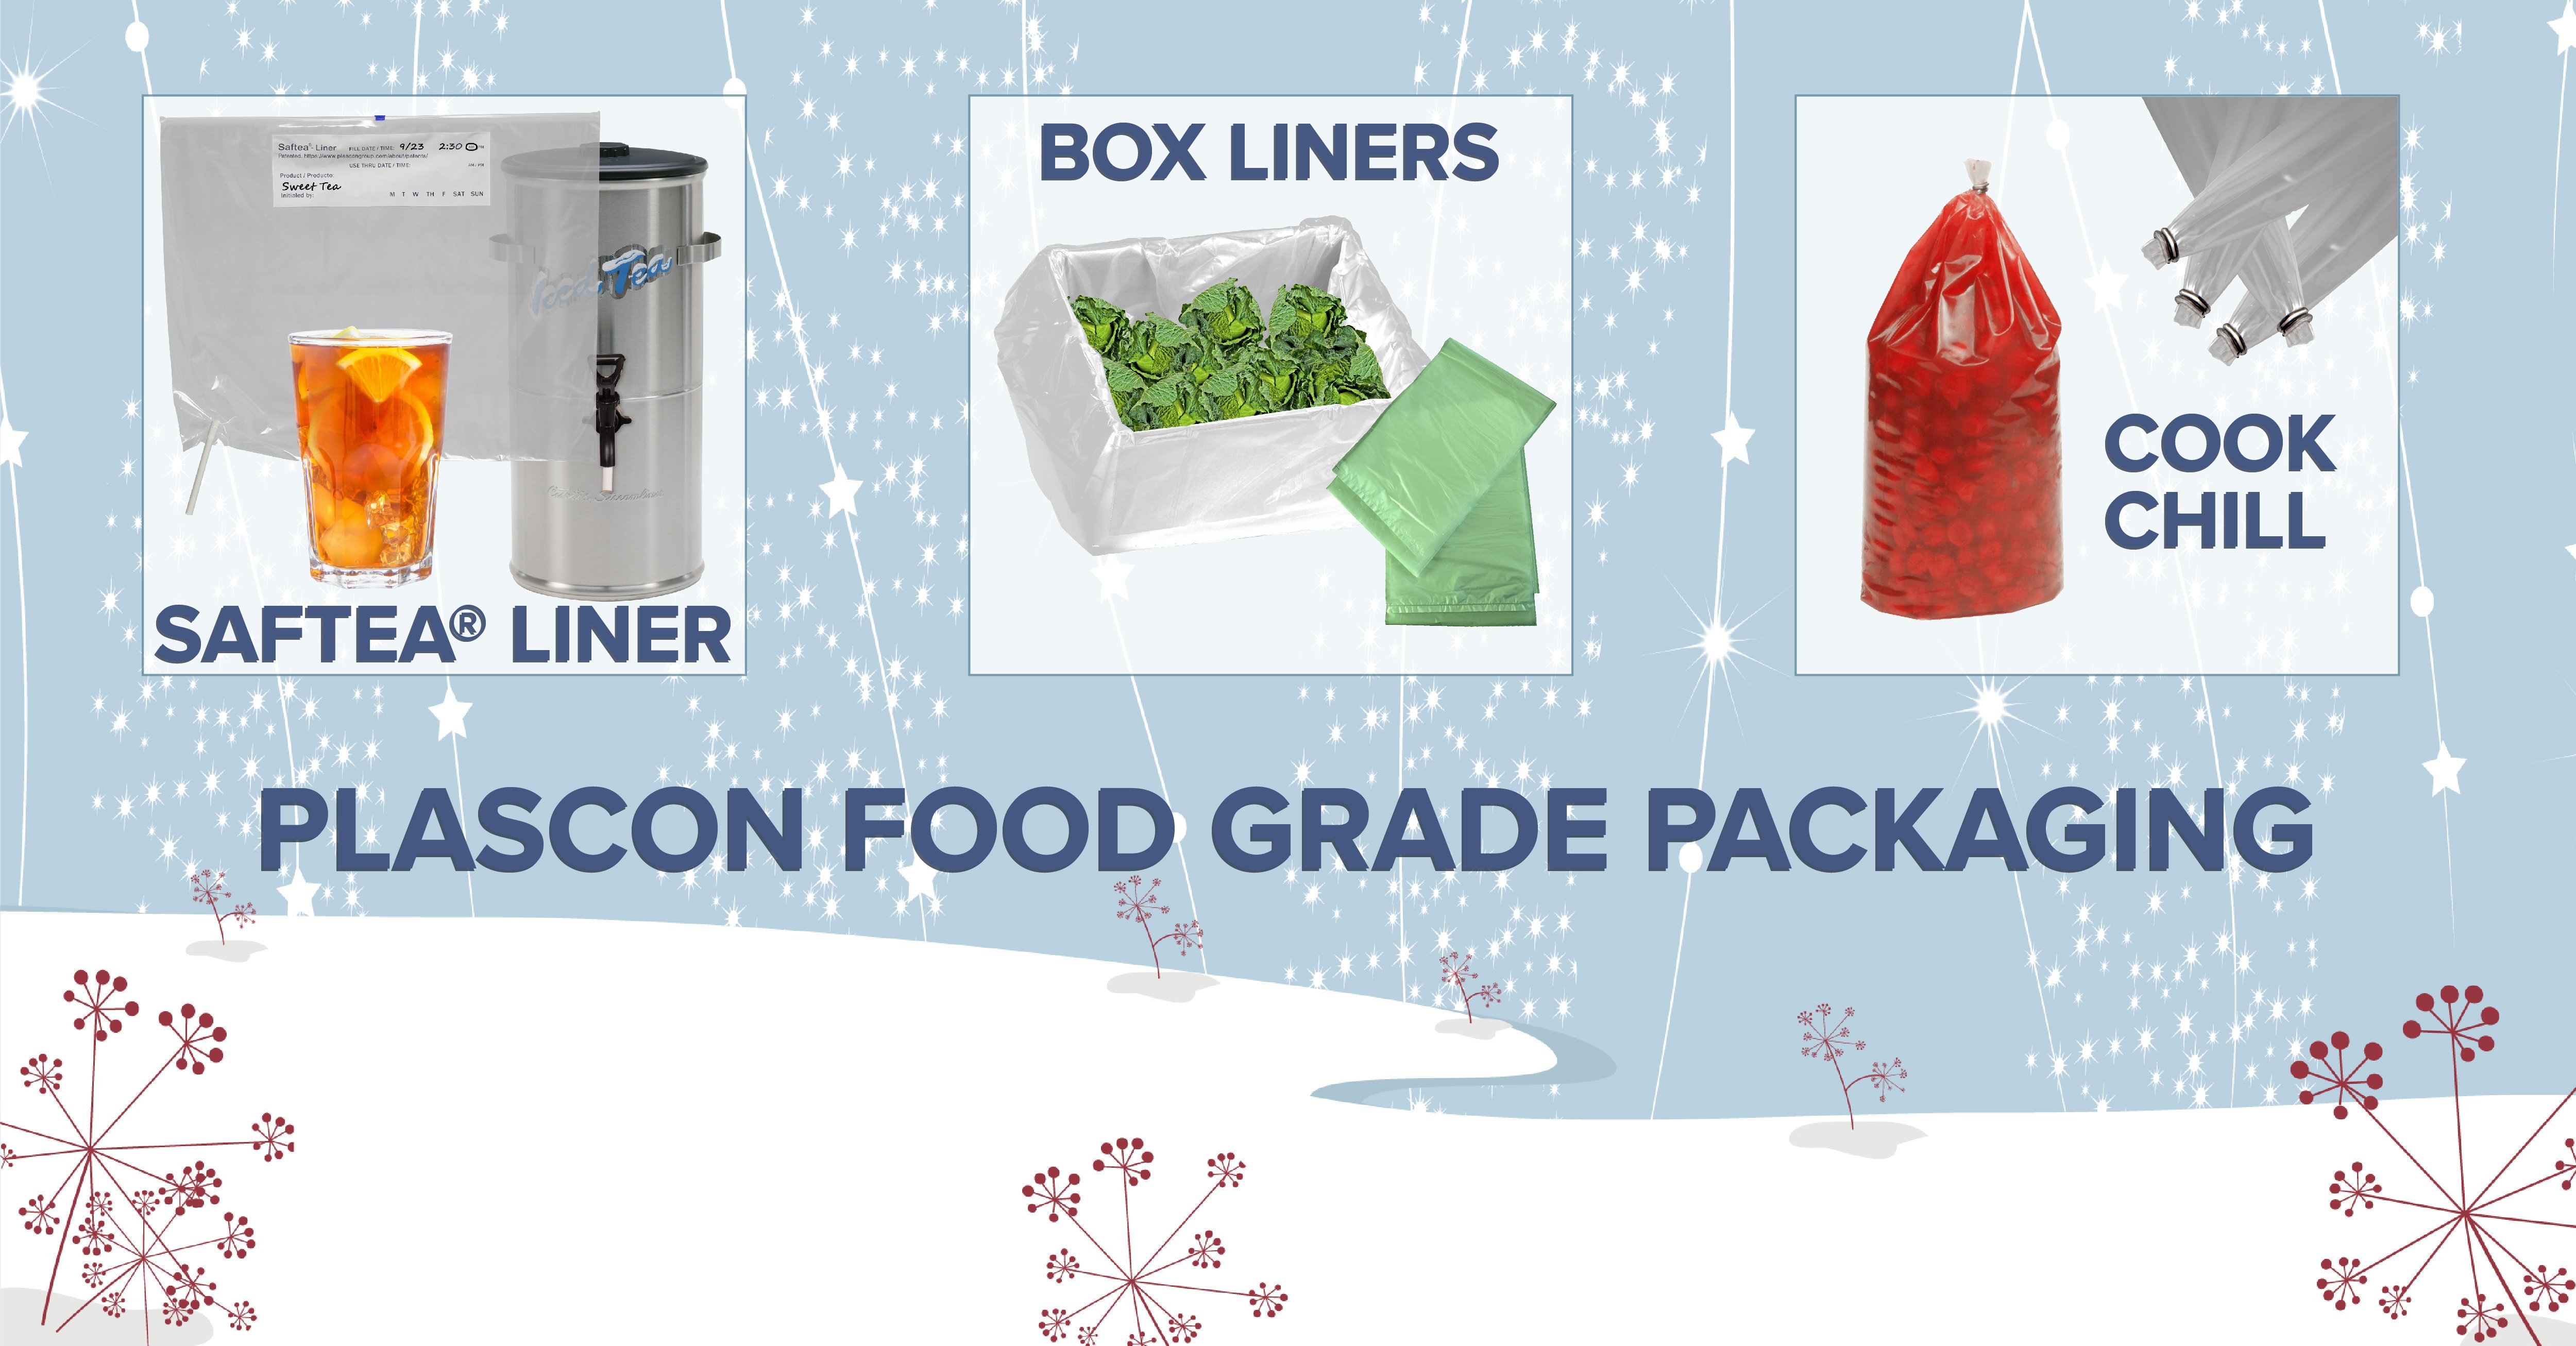 Plascon food grade packaging